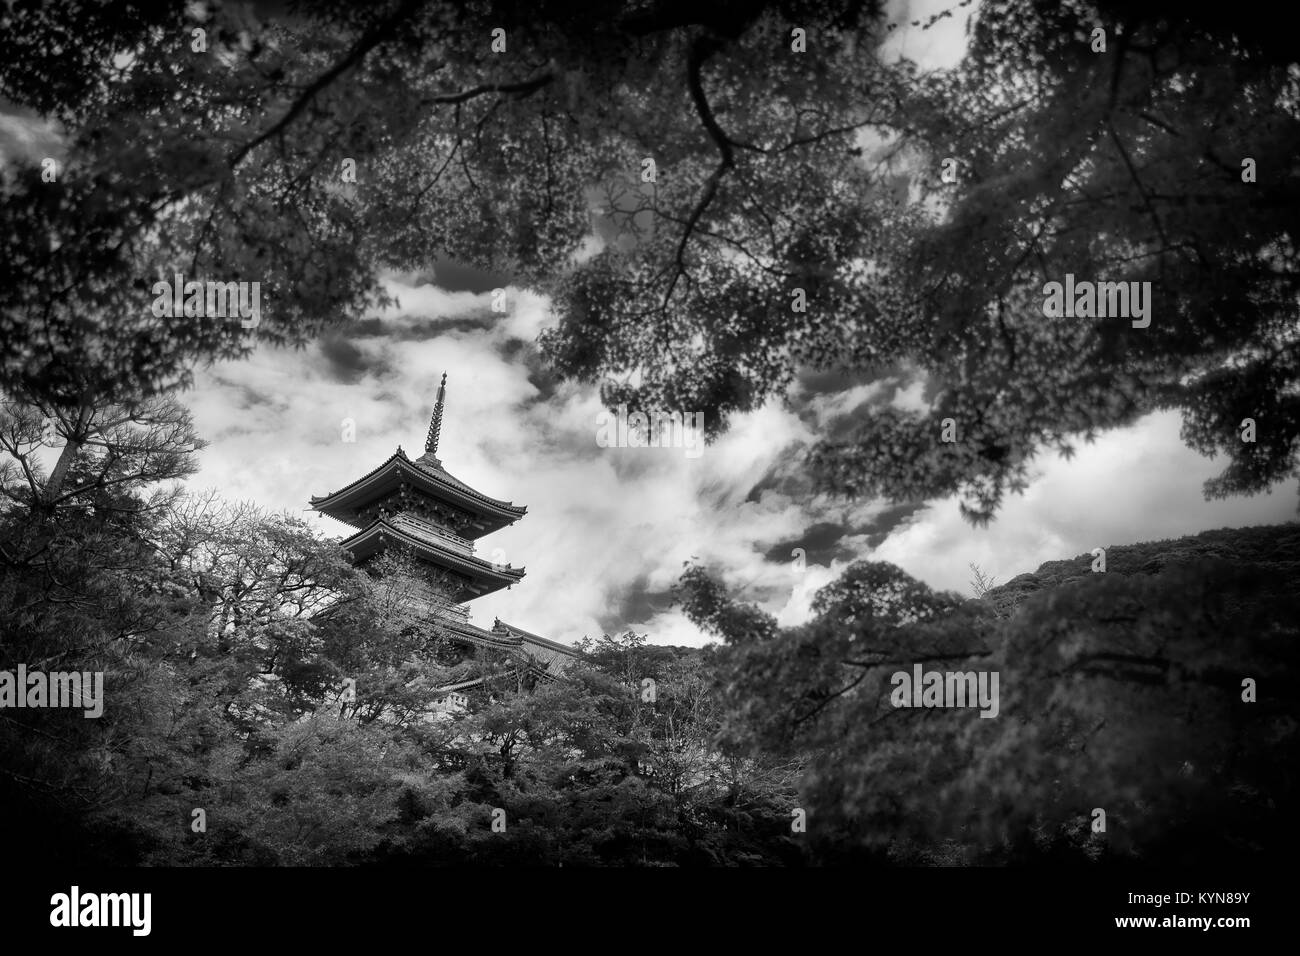 Artistique spectaculaire photographie en noir et blanc d'Sanjunoto pagode de Temple Kiyomizu-dera temple bouddhiste à Kyoto, au Japon, dans un paysage magnifique derrière Japane Banque D'Images